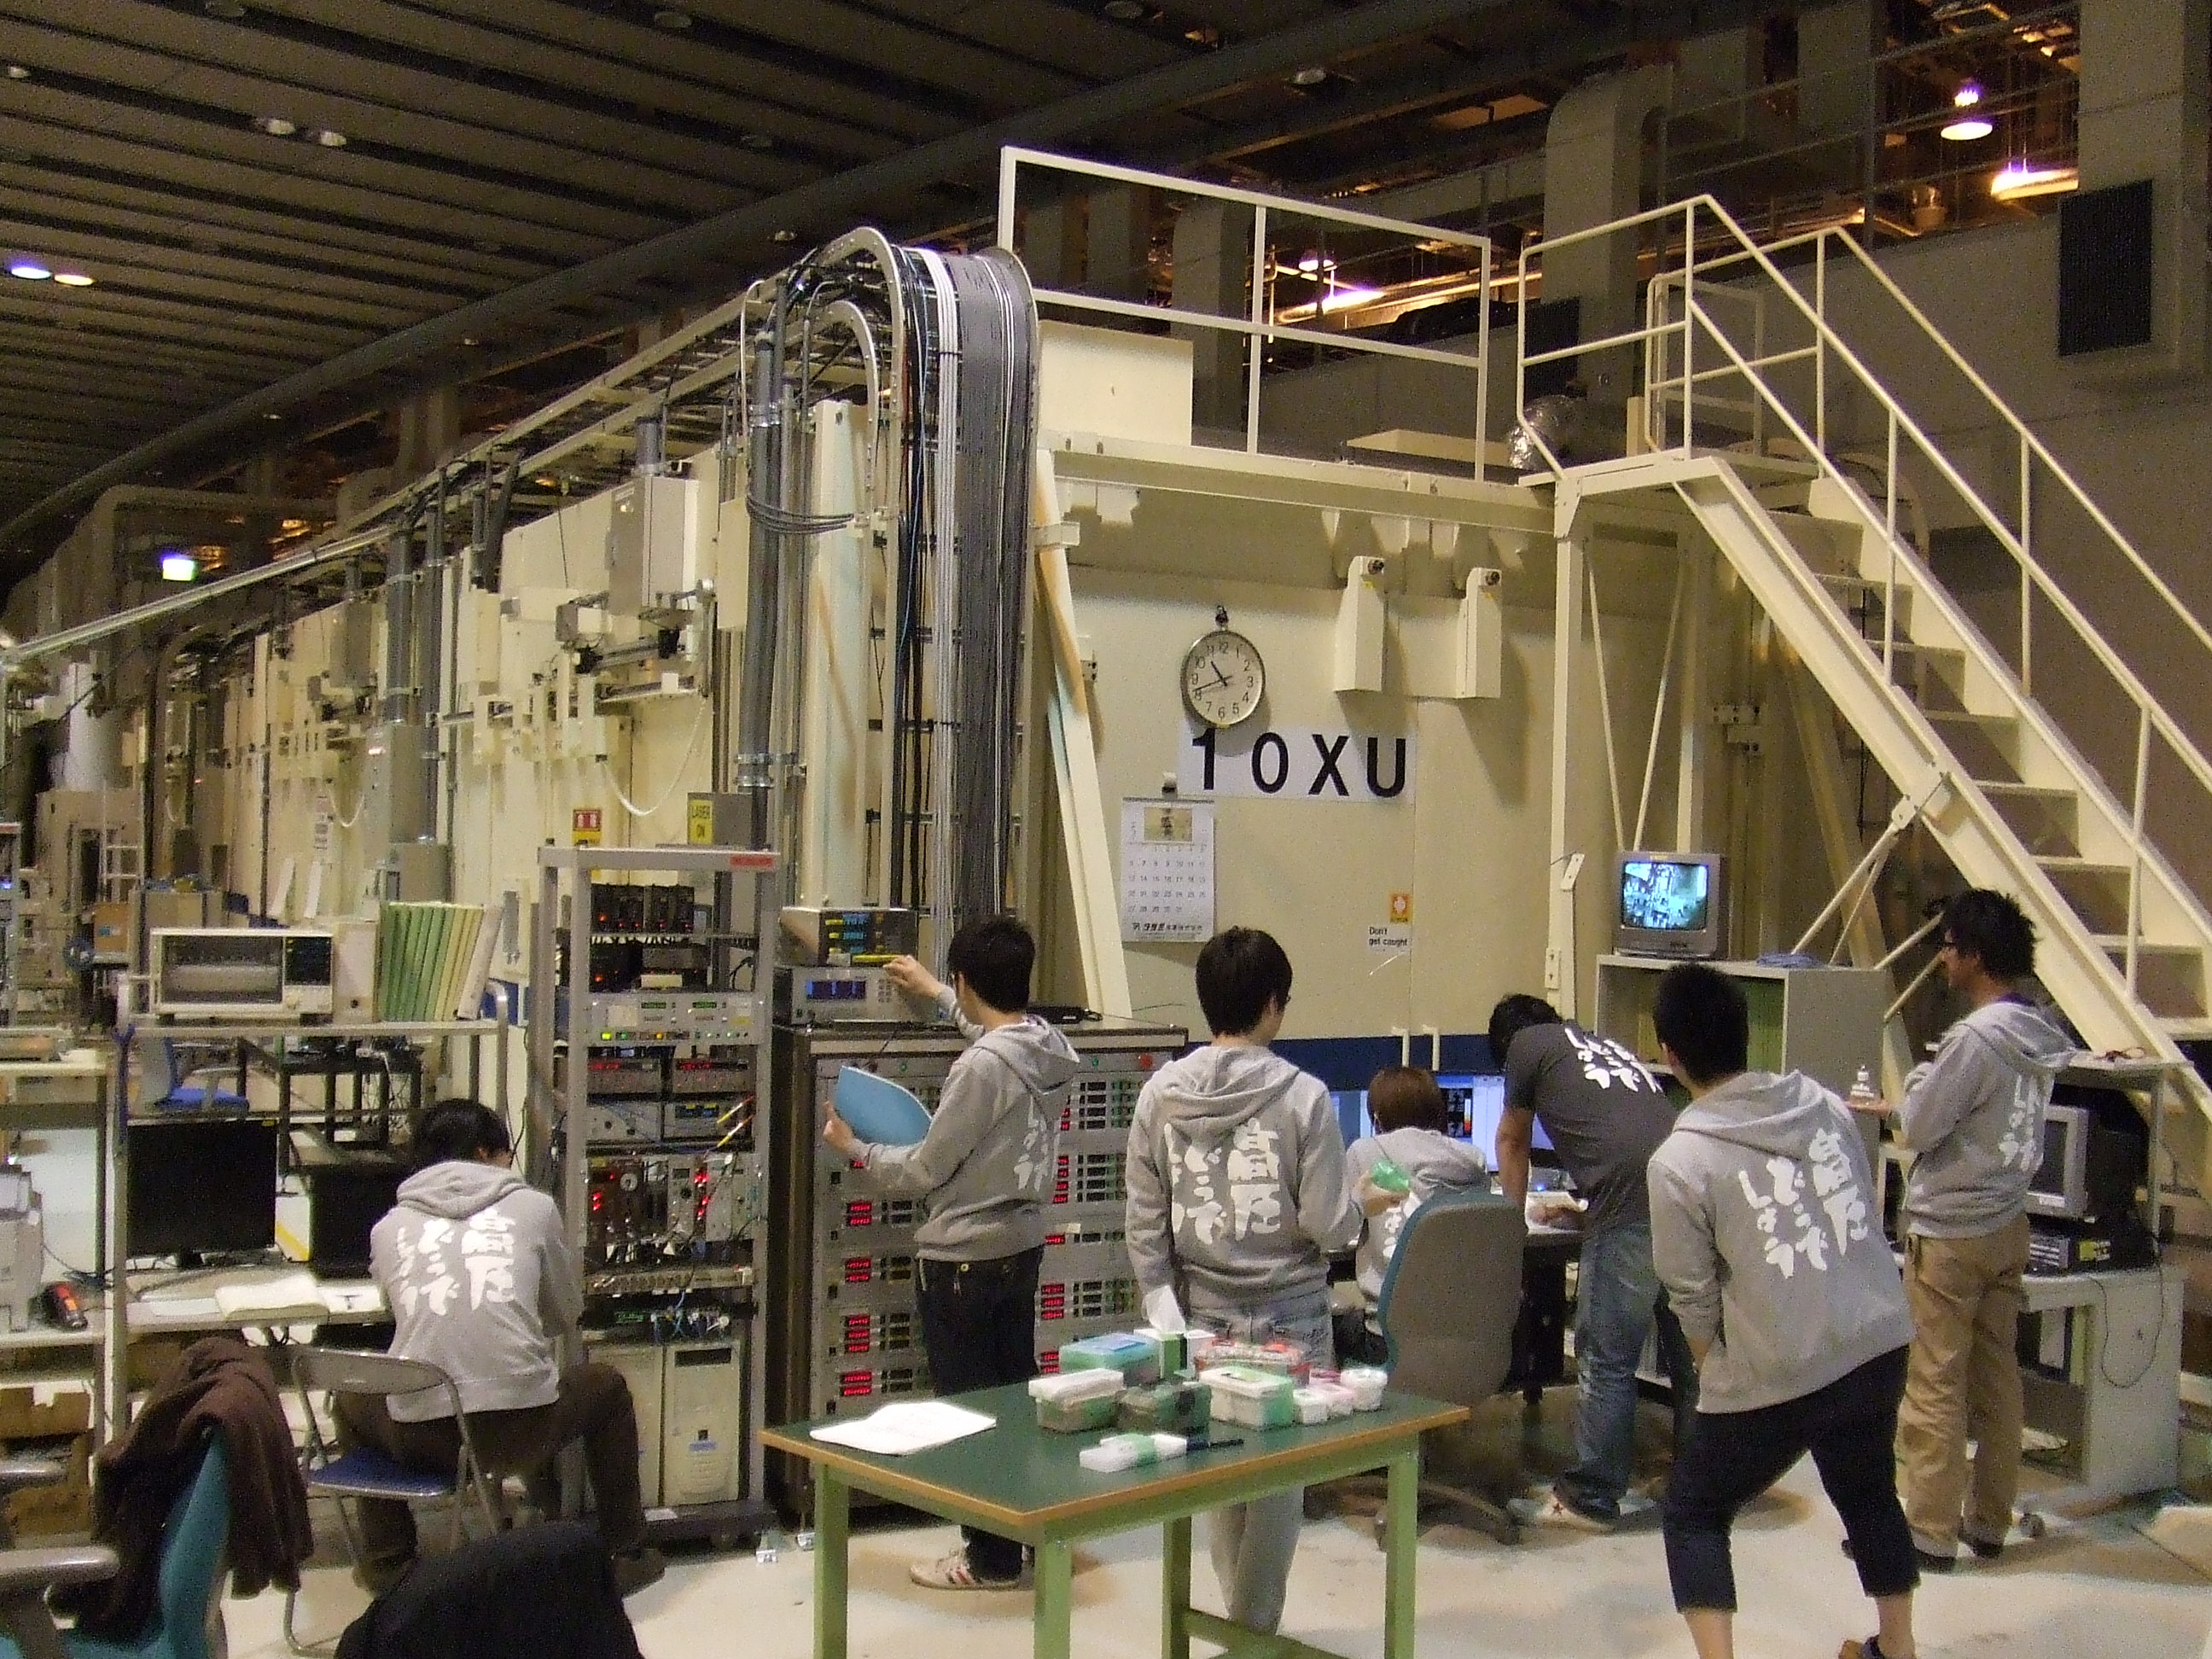 大型放射光施設SPring-8のBL10XUビームラインでの実験風景